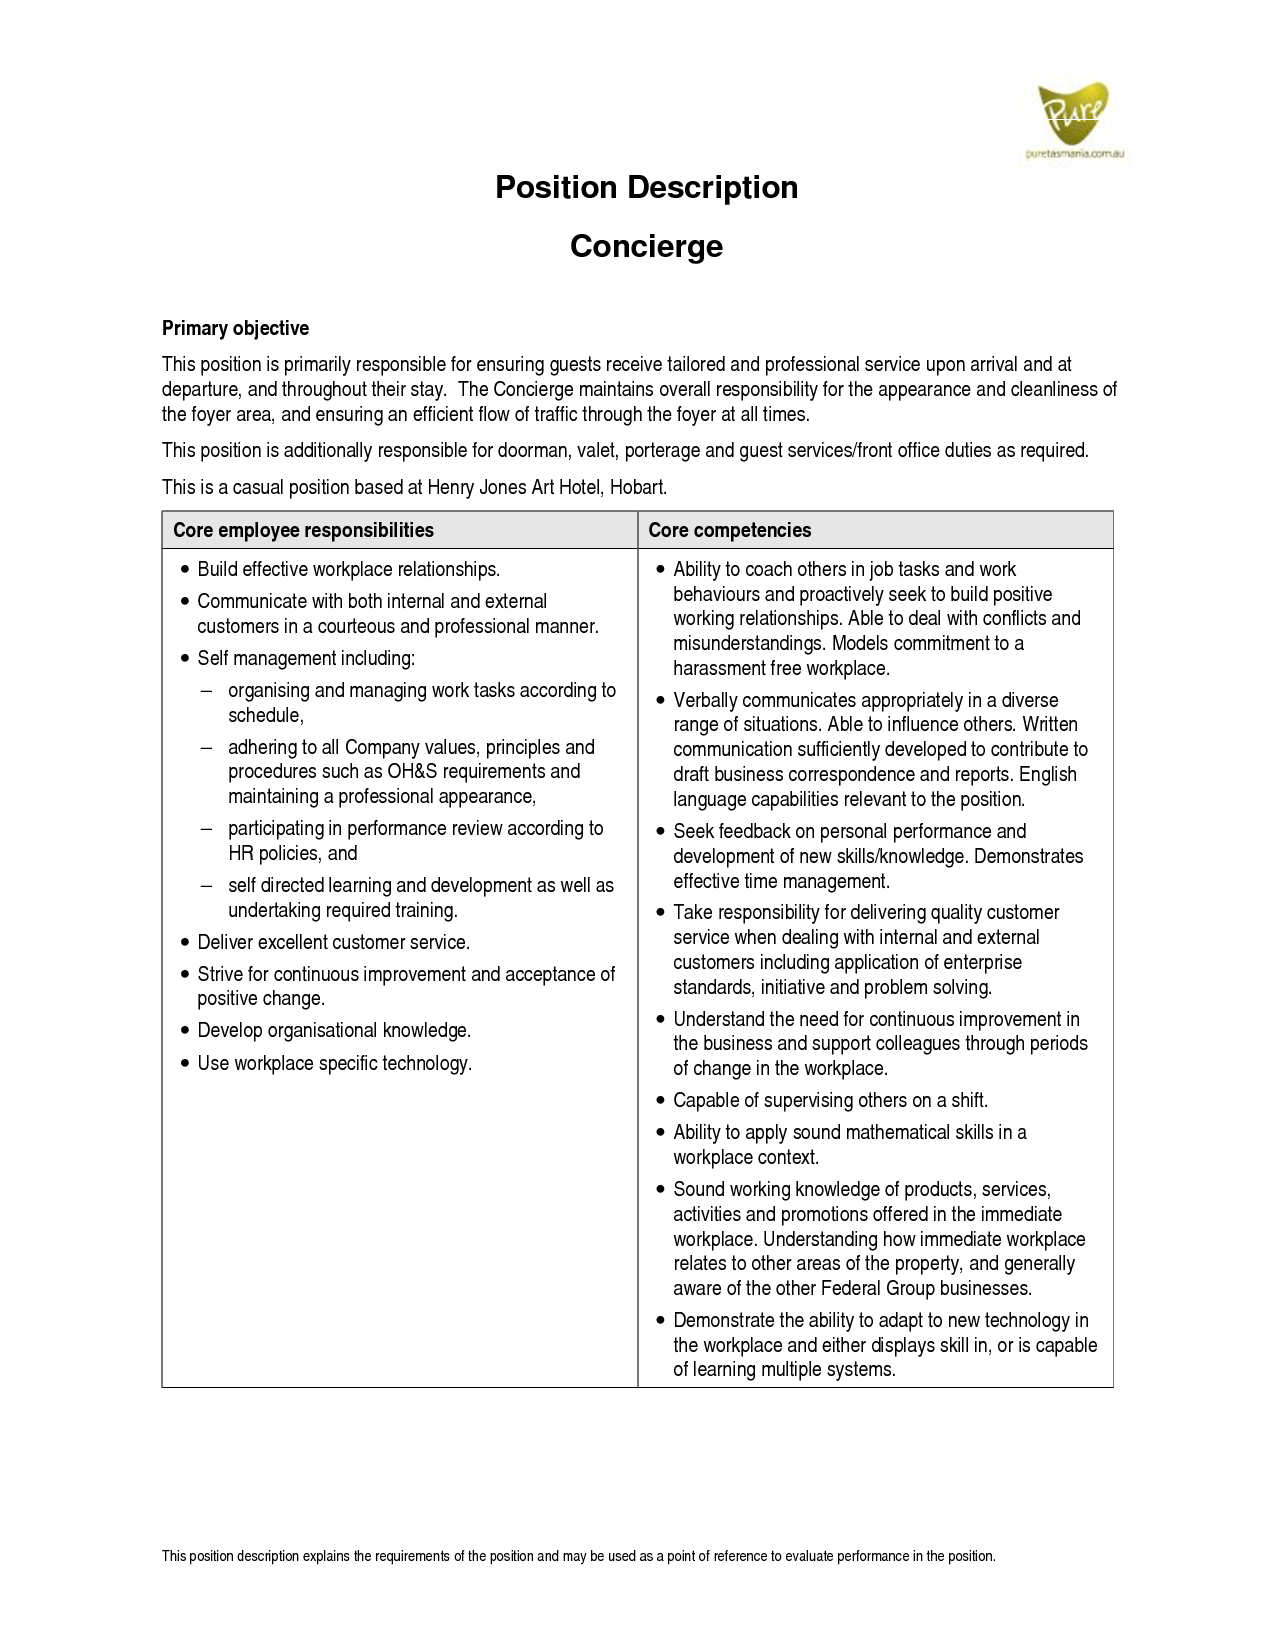 resume description for concierge